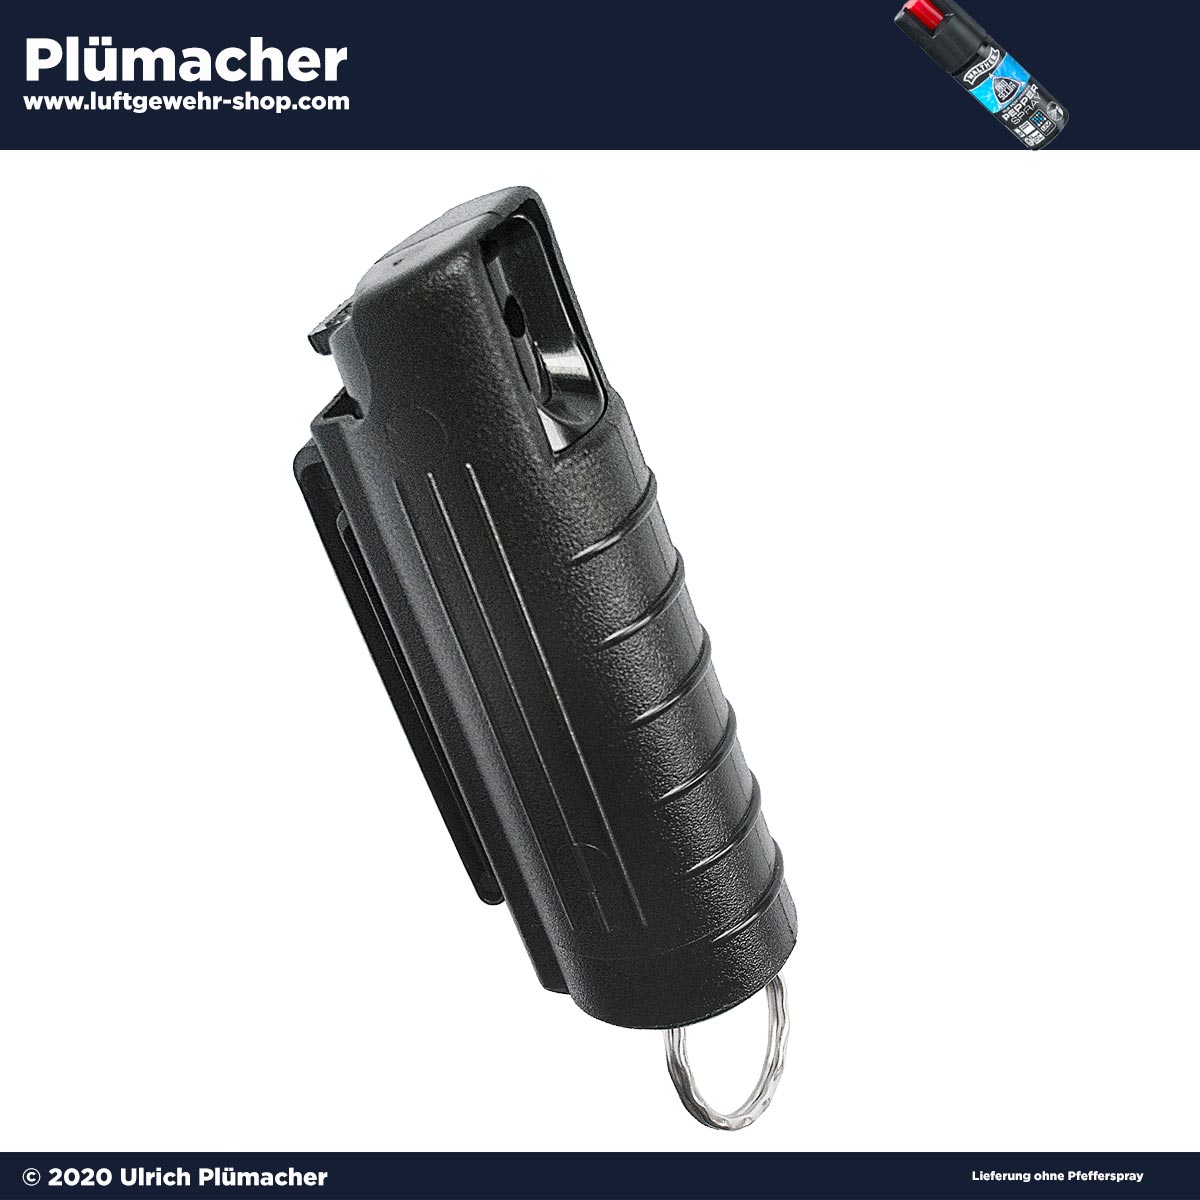 Pocket Case für Pfefferspray Walther ProSecur . Luftgewehr-Shop -  Luftgewehre, Schreckschusswaffen, CO2 Waffen, Luftpistolen kaufen